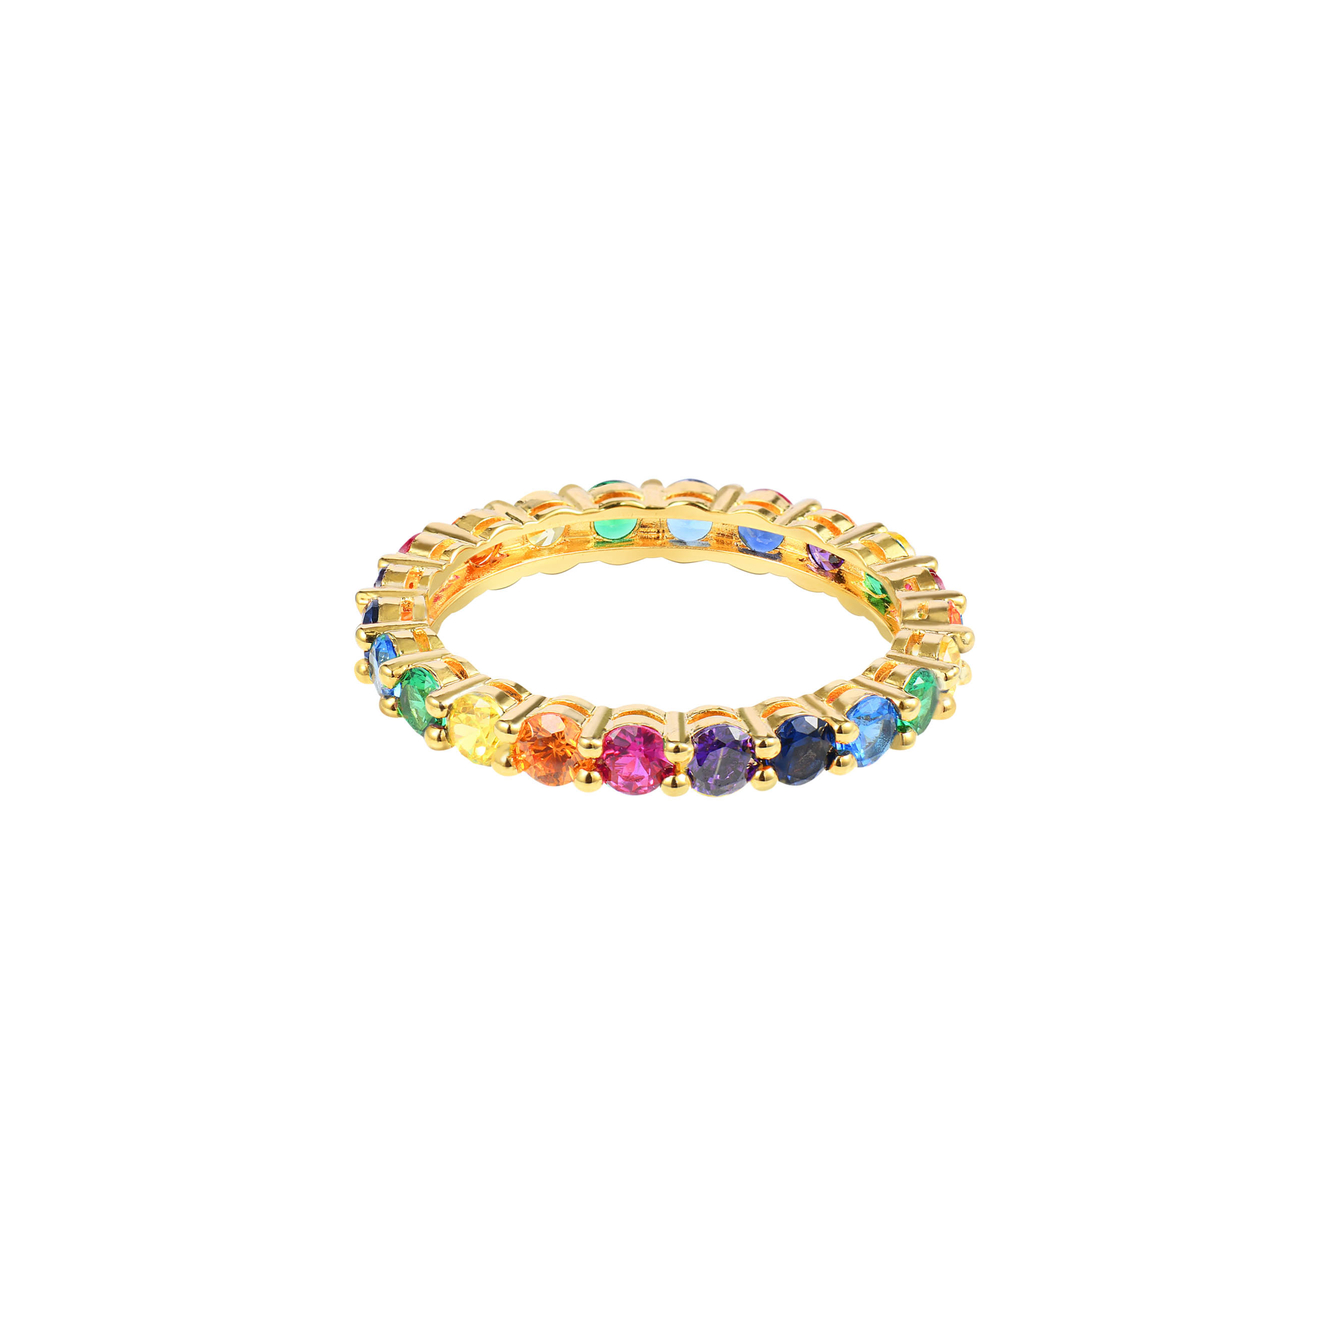 WANNA?BE! Кольцо Спаркл с разноцветными камнями золоченое wanna be позолоченное ожерелье из серебра с бабочками с разноцветными камнями